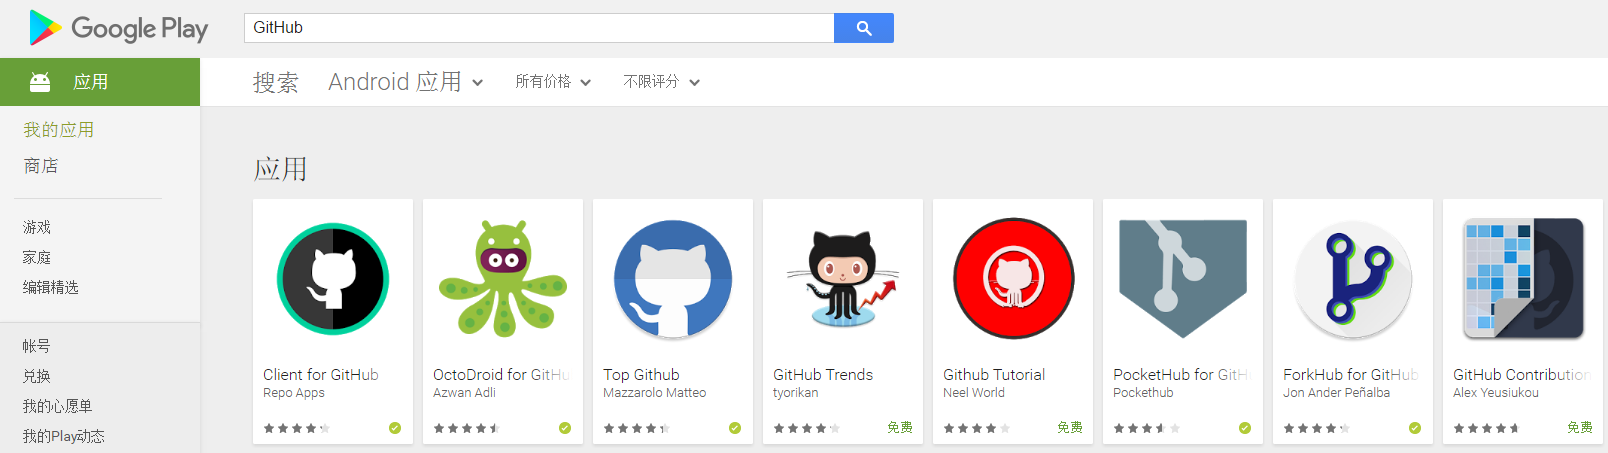 GitHub on Google Play